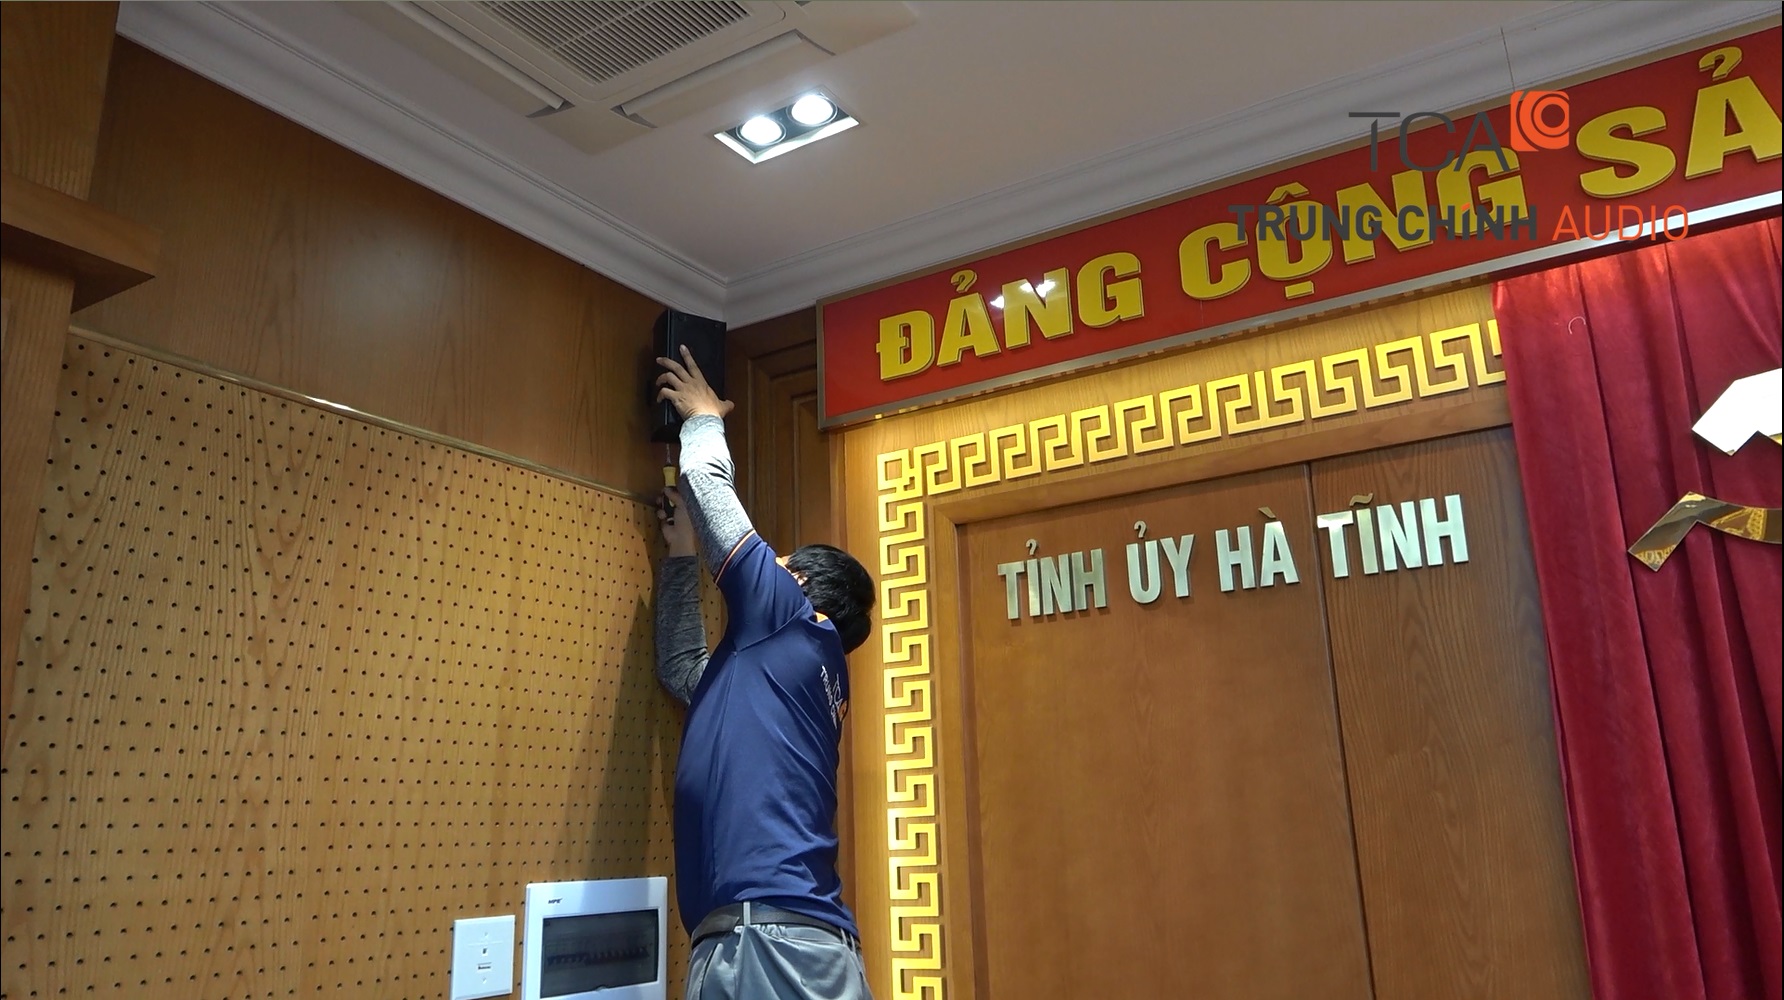 Thiết bị micro âm thanh hội thảo không dây TOA TS-900: Tỉnh ủy Hà Tĩnh